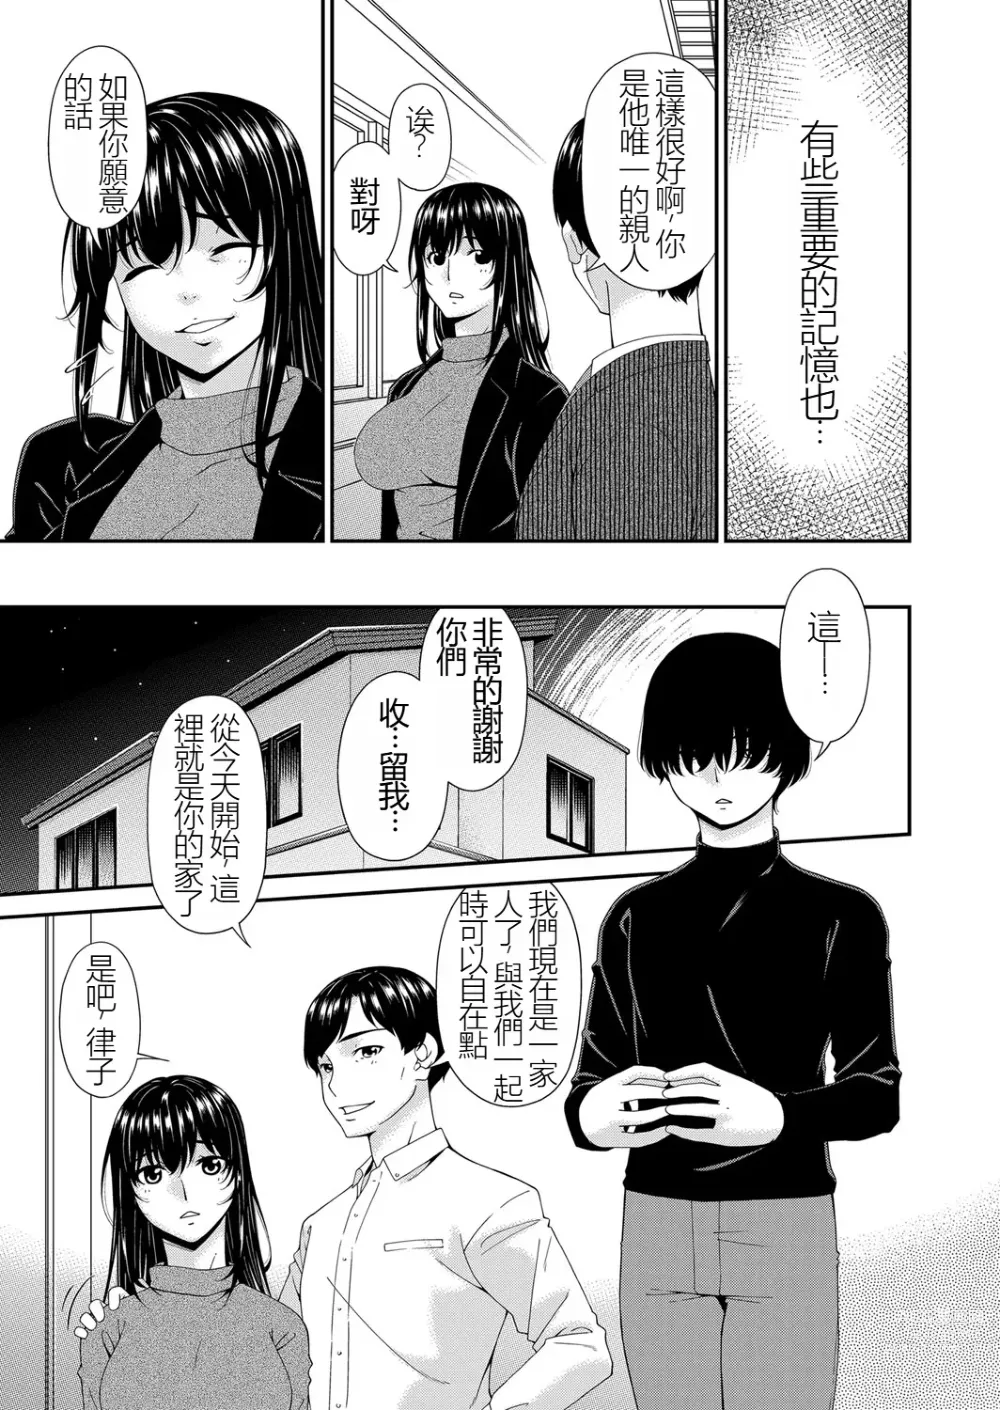 Page 7 of manga Saiin Kazoku Completed